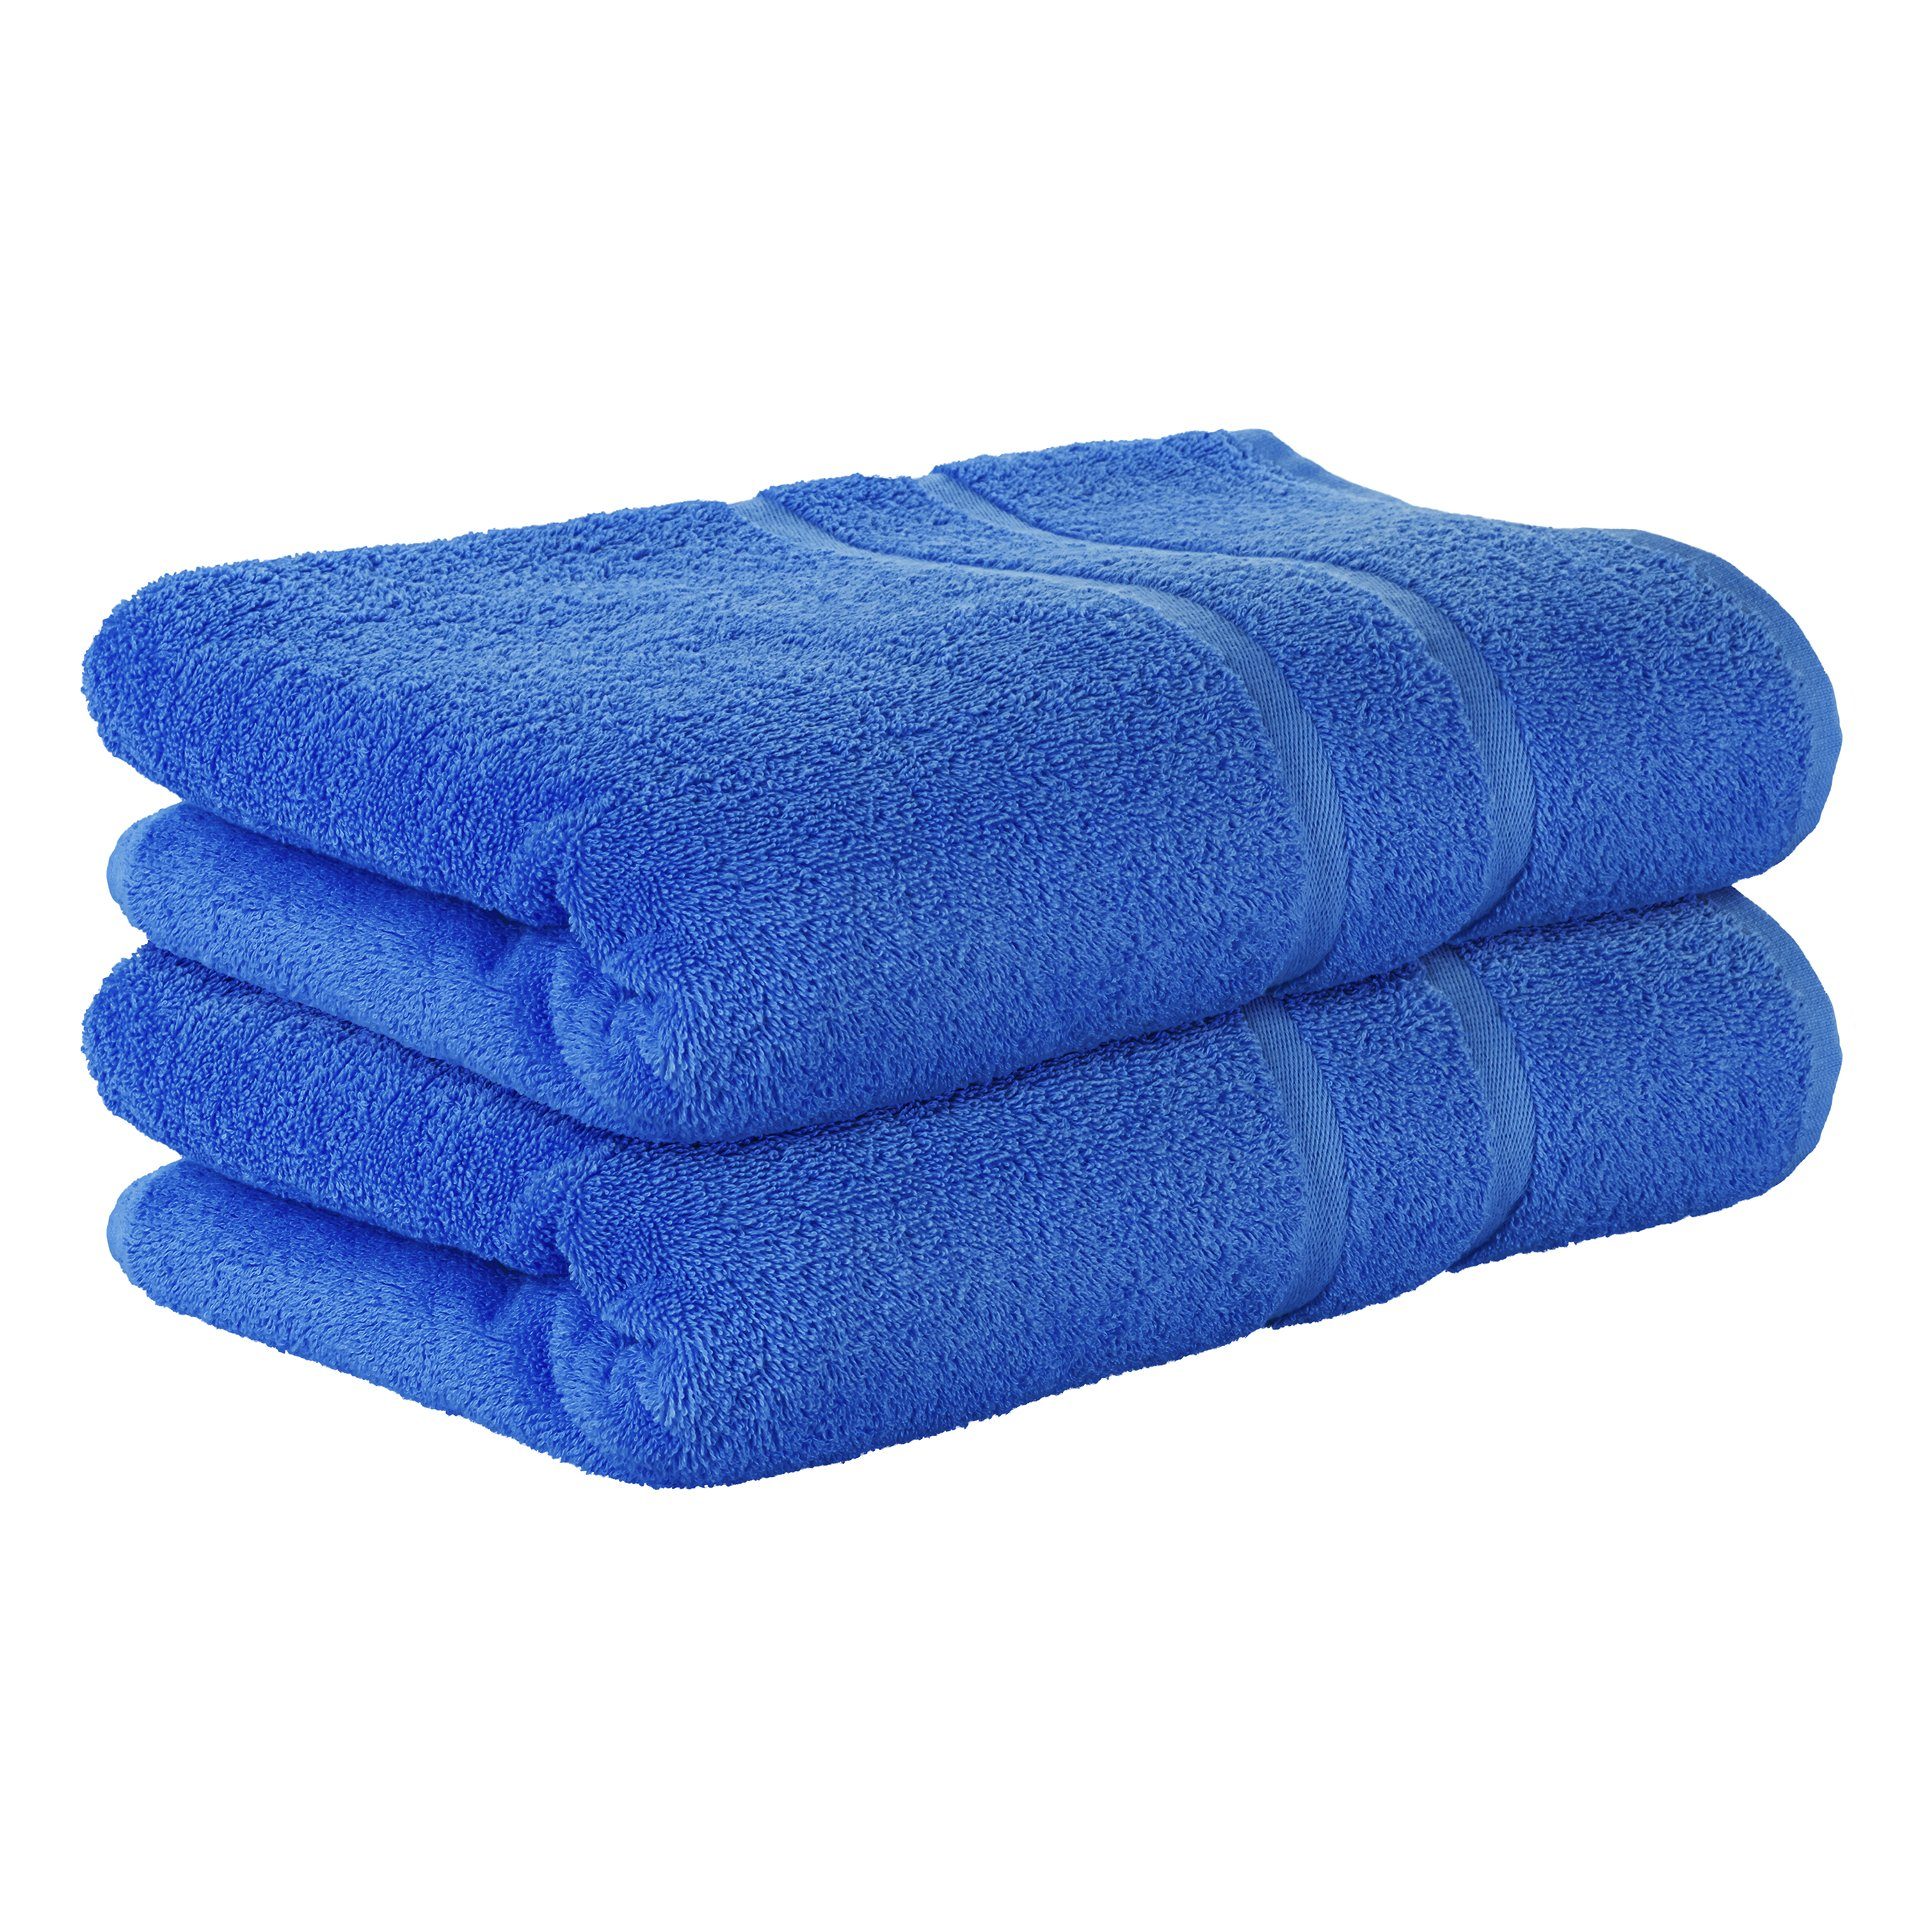 StickandShine Handtuch 2er Set Premium Frottee Handtuch 50x100 cm in 500g/m² aus 100% Baumwolle (2 Stück), 100% Baumwolle 500GSM Frottee Blau